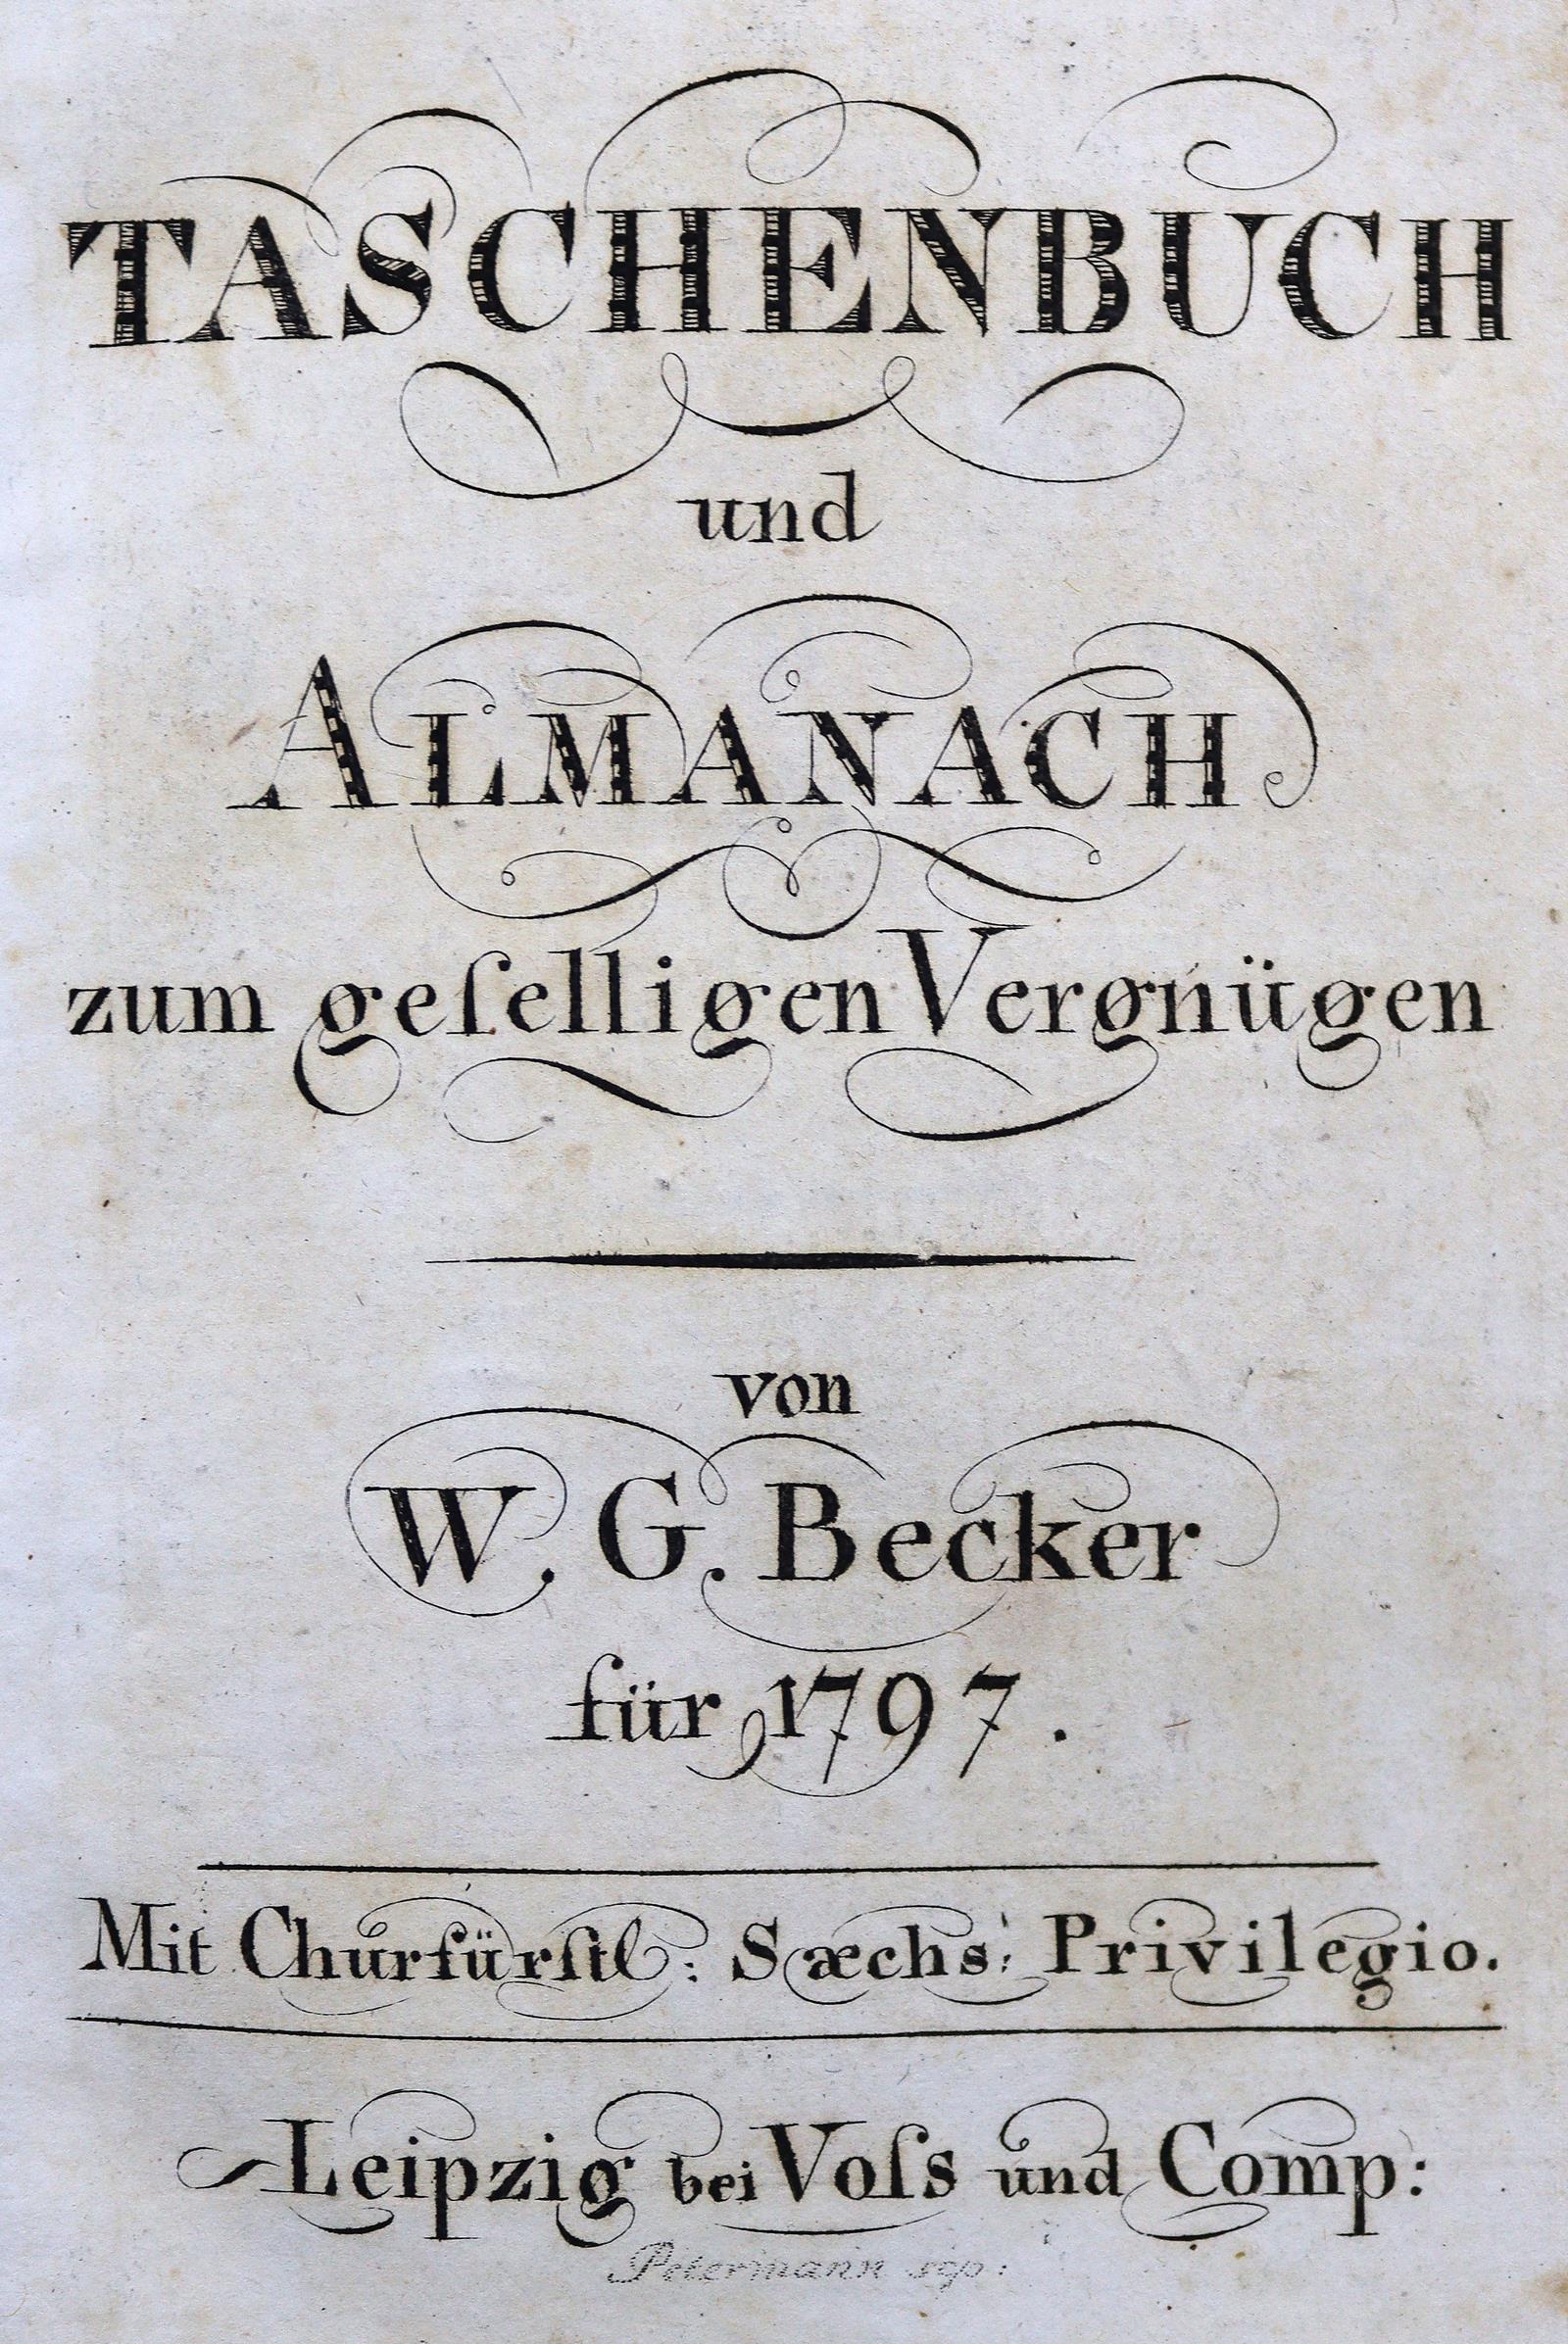 Taschenbuch und Almanach | Bild Nr.1